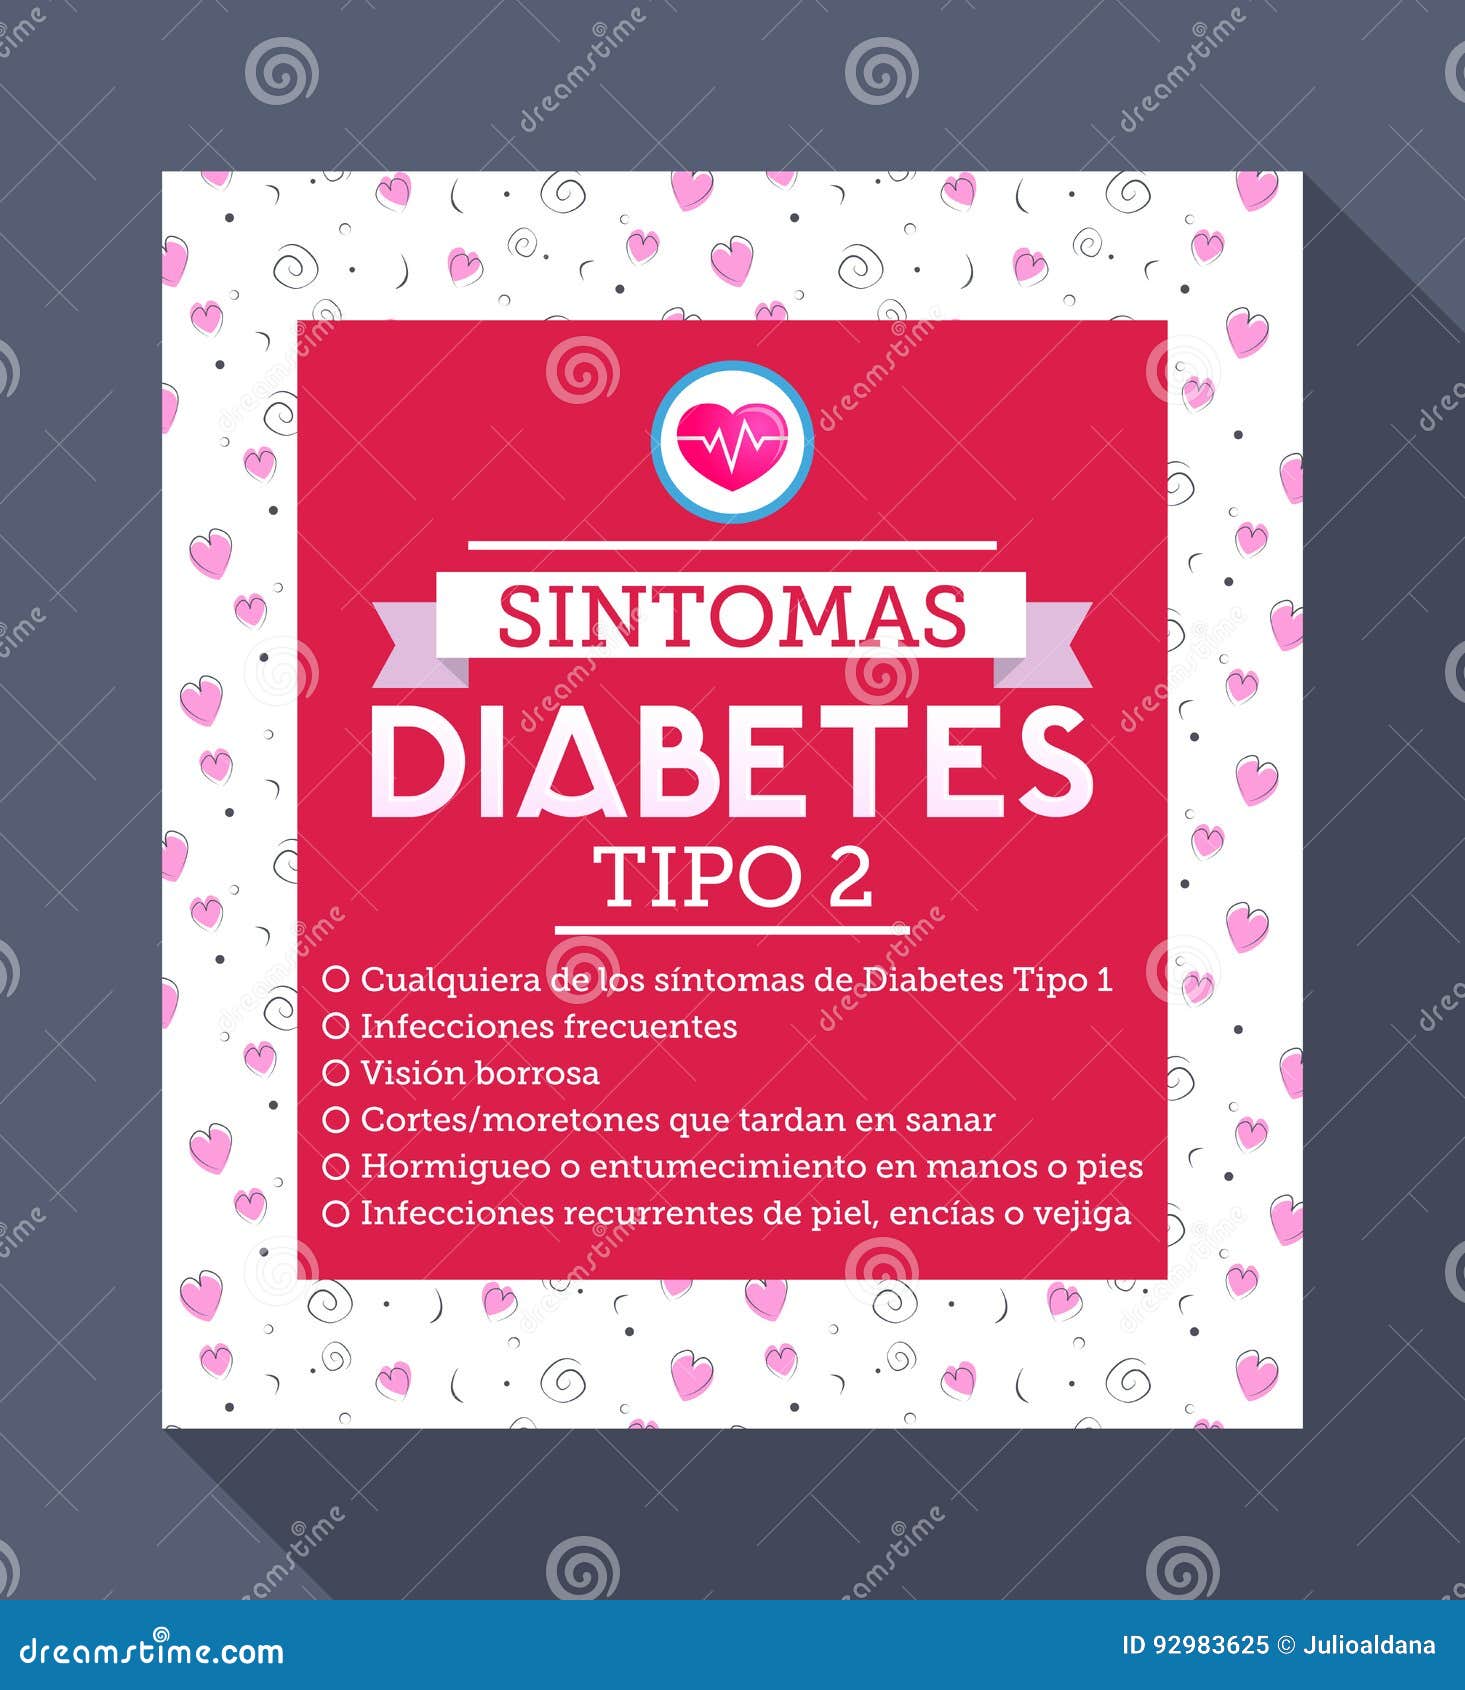 sintomas diabetes tipo 2 spanish text